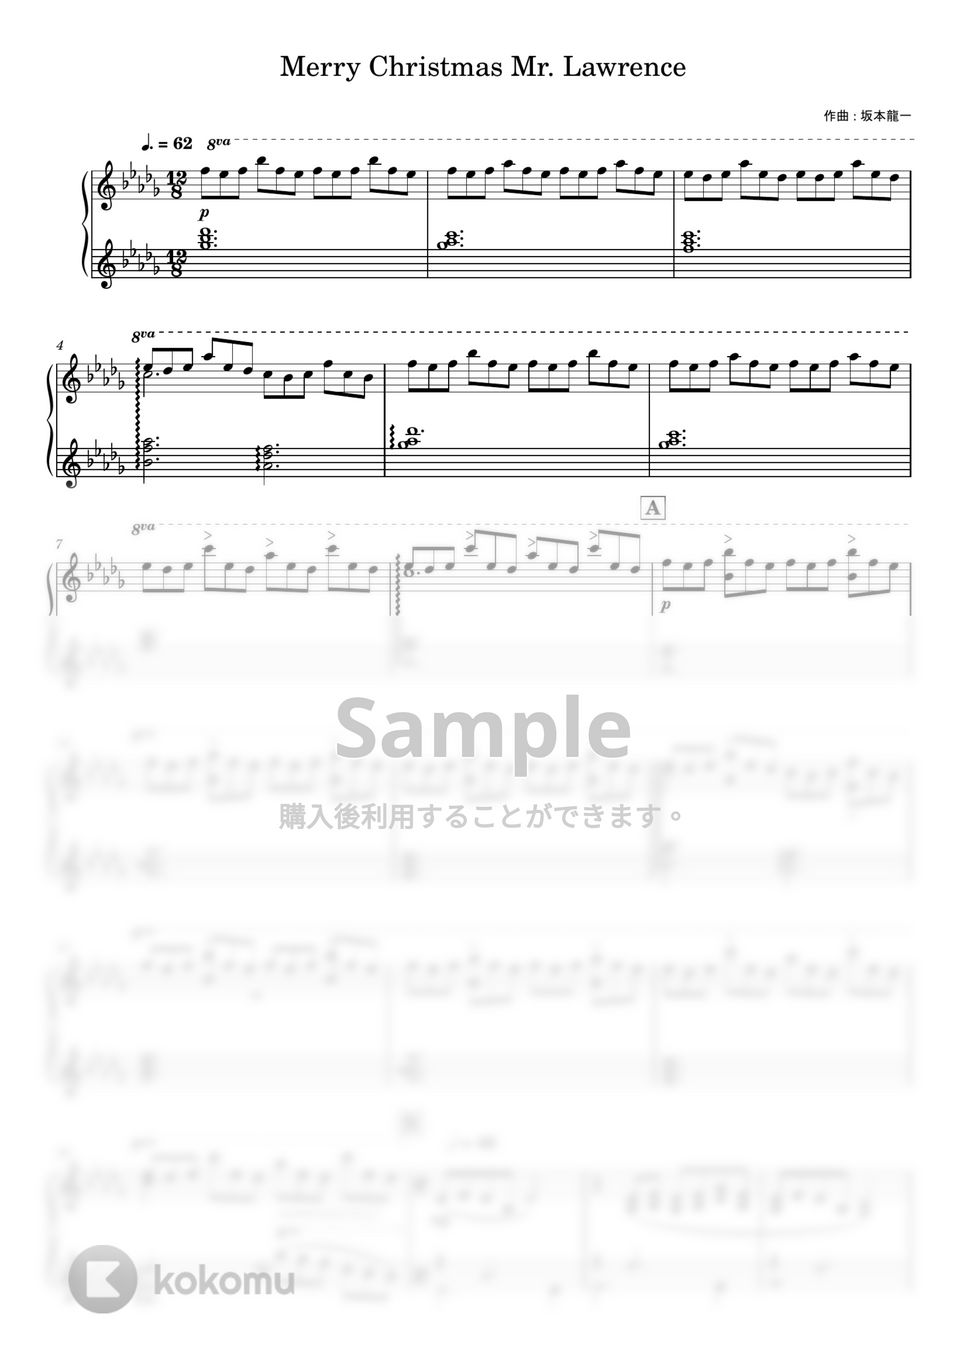 坂本龍一 - Merry Christmas Mr. Lawrence (中級) 楽譜 by 月野アイラ